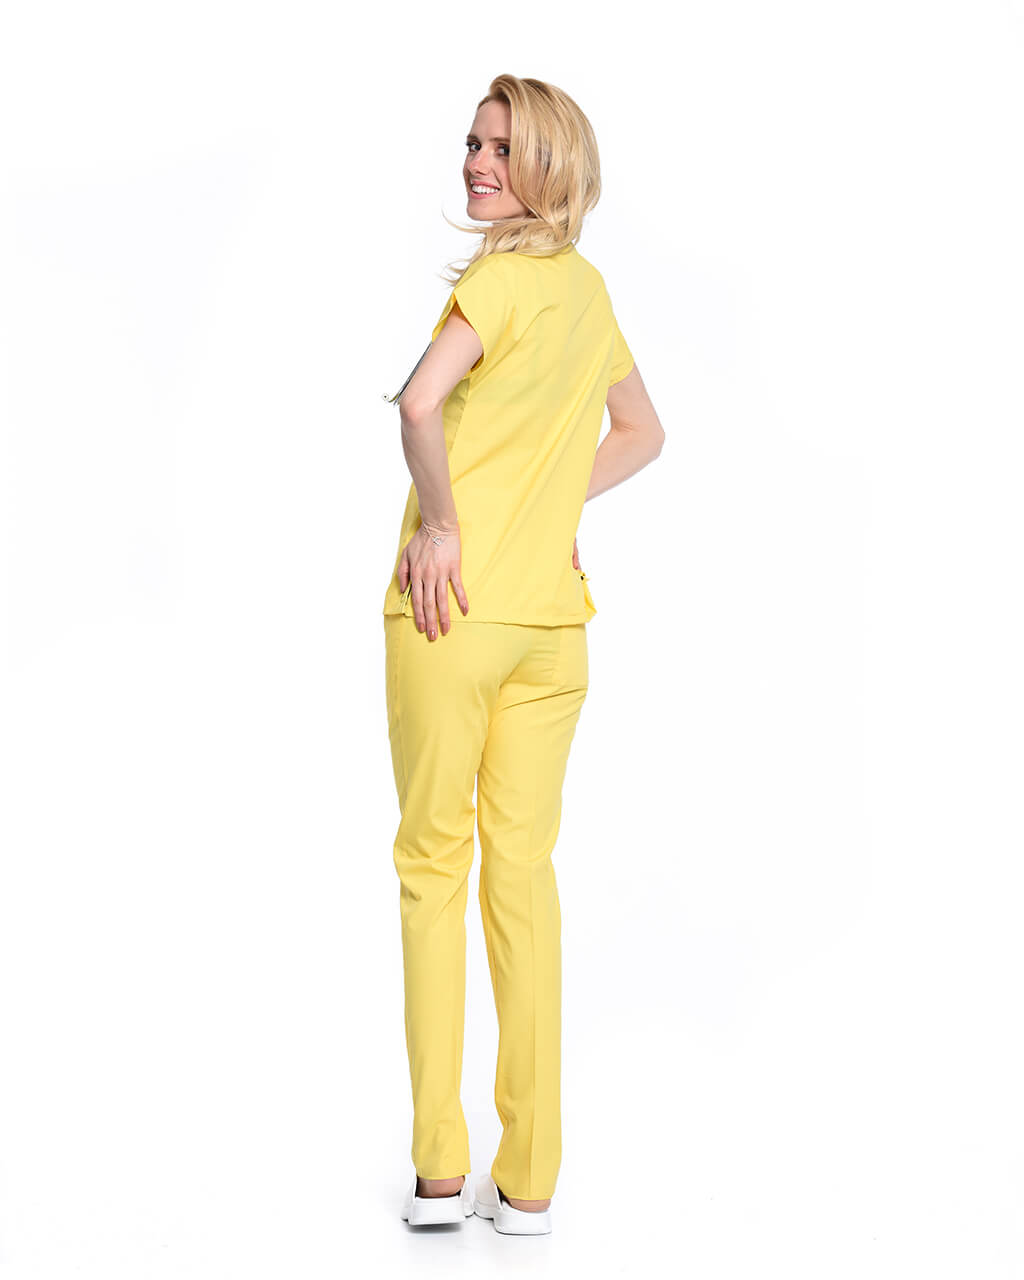 Kadın Terrycotton Sarı Doktor & Hemşire Forması Takımı